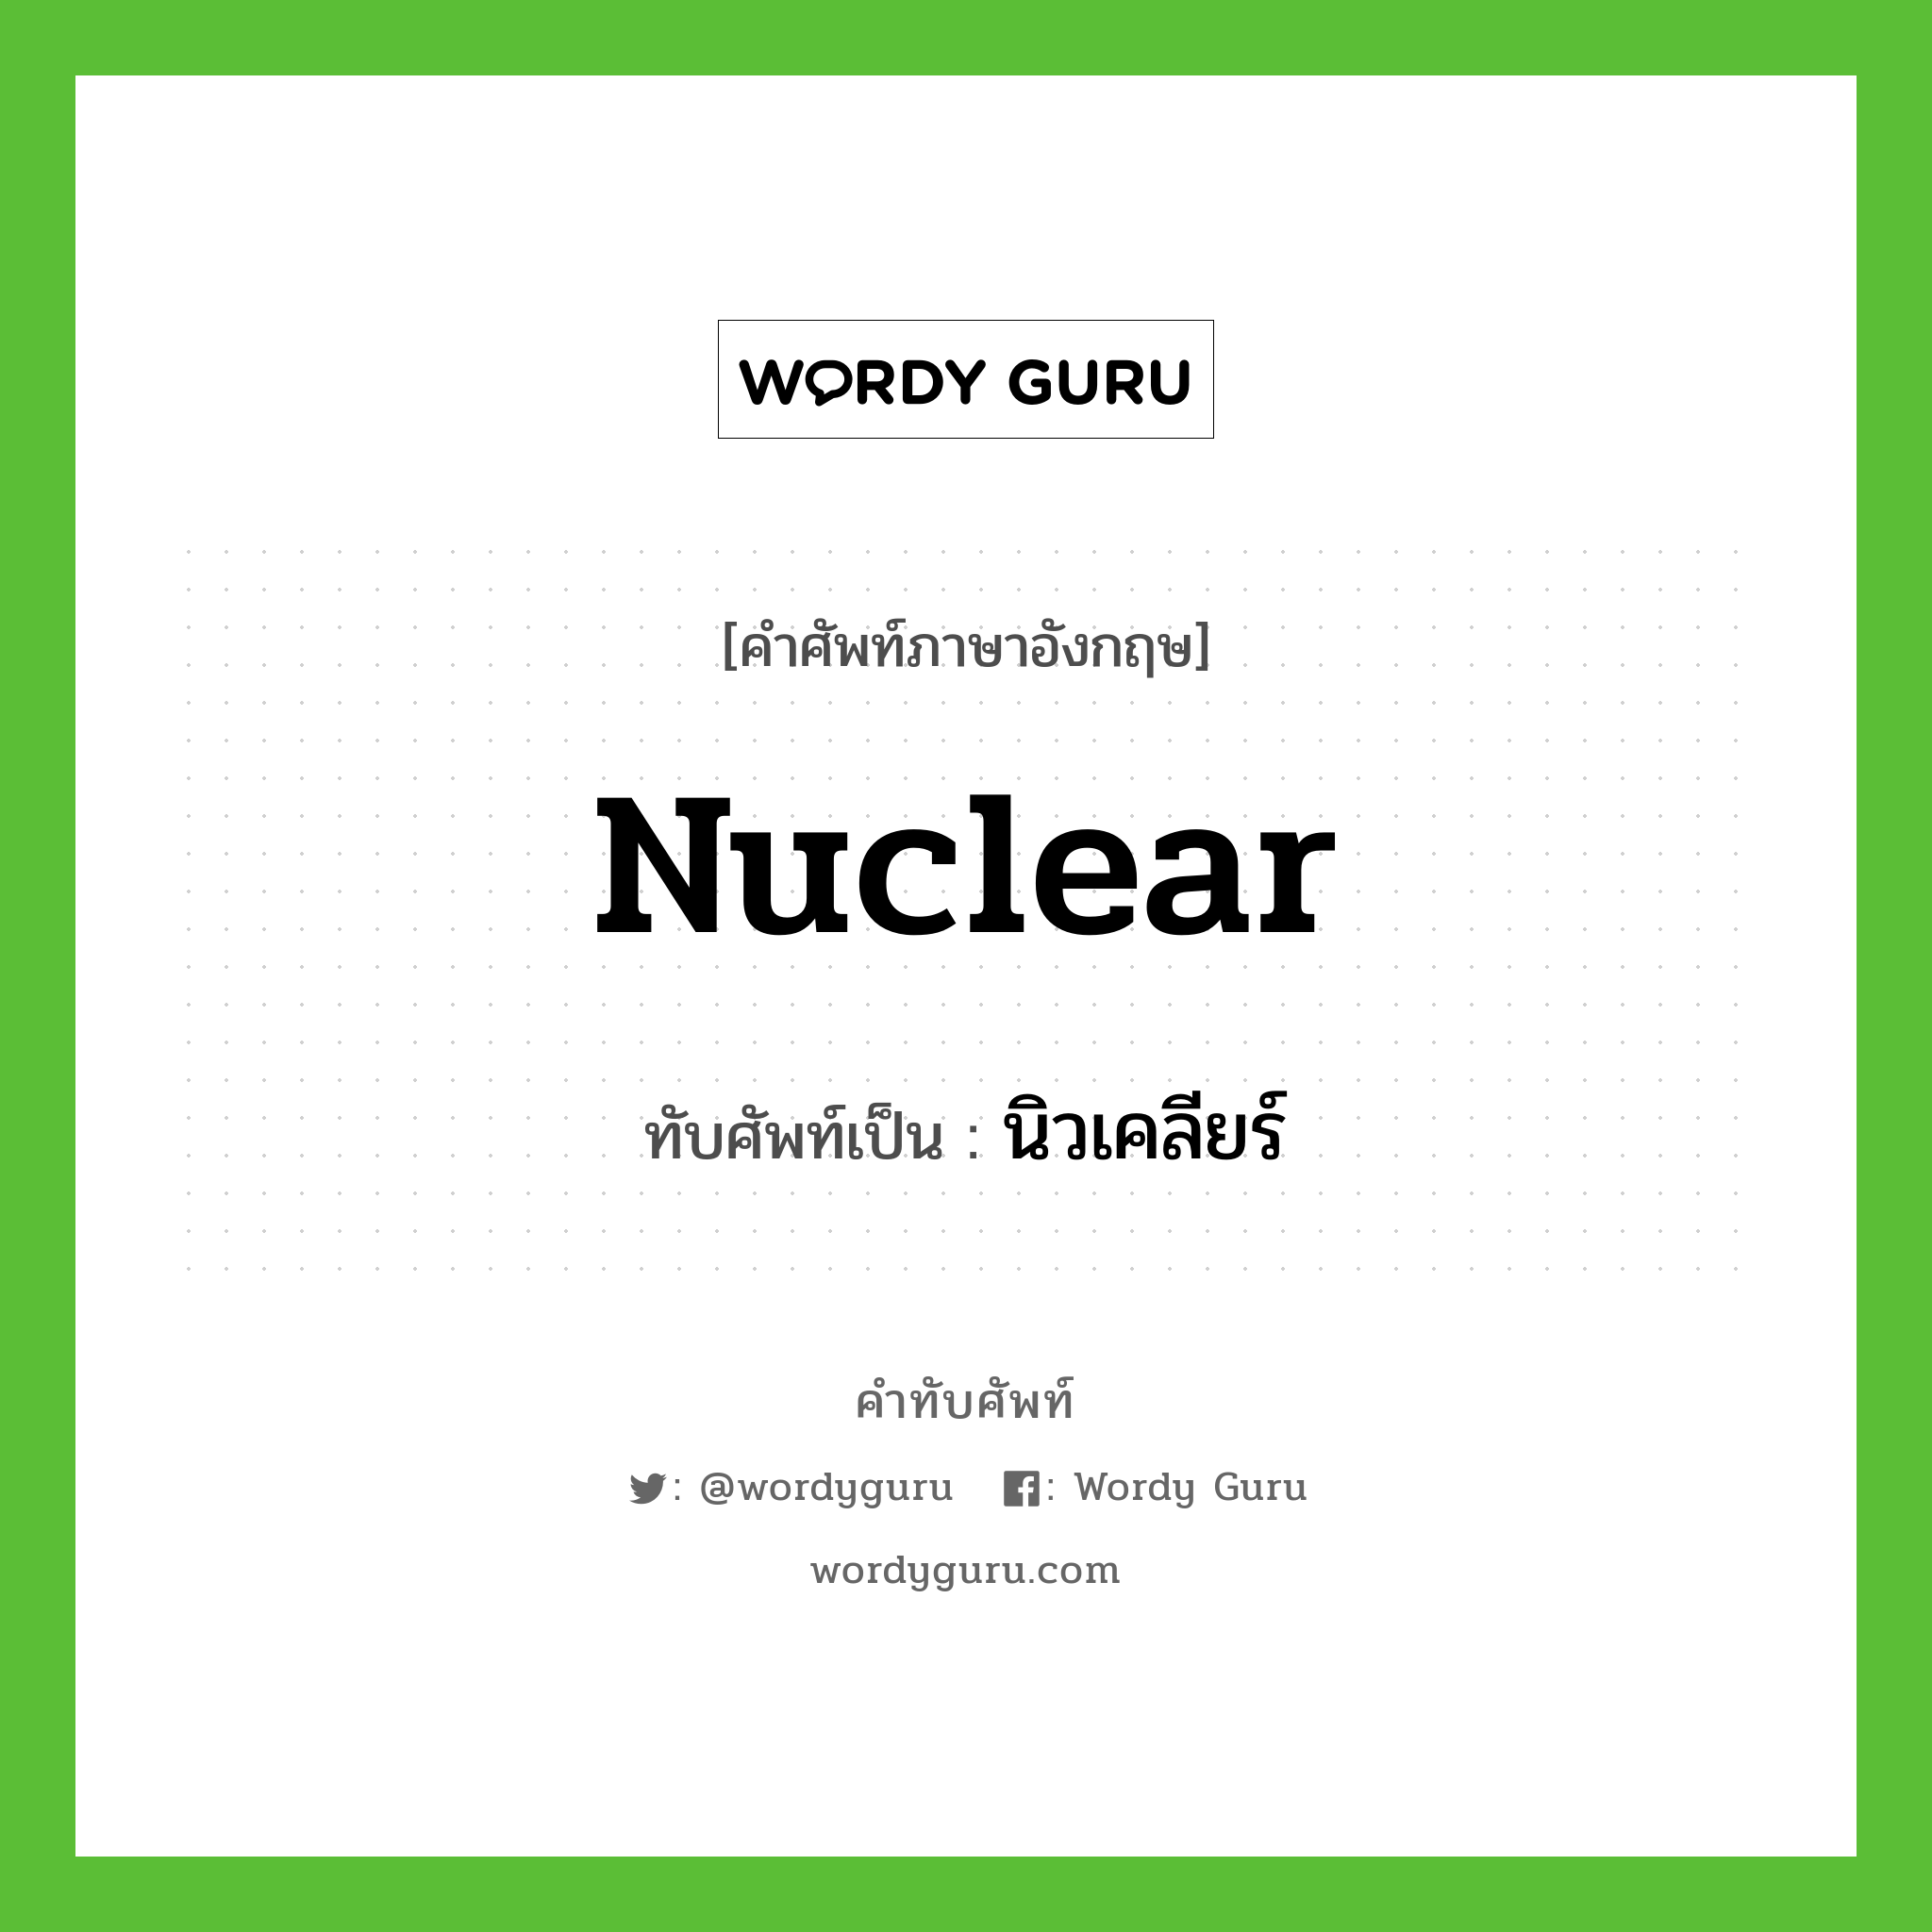 nuclear เขียนเป็นคำไทยว่าอะไร?, คำศัพท์ภาษาอังกฤษ nuclear ทับศัพท์เป็น นิวเคลียร์